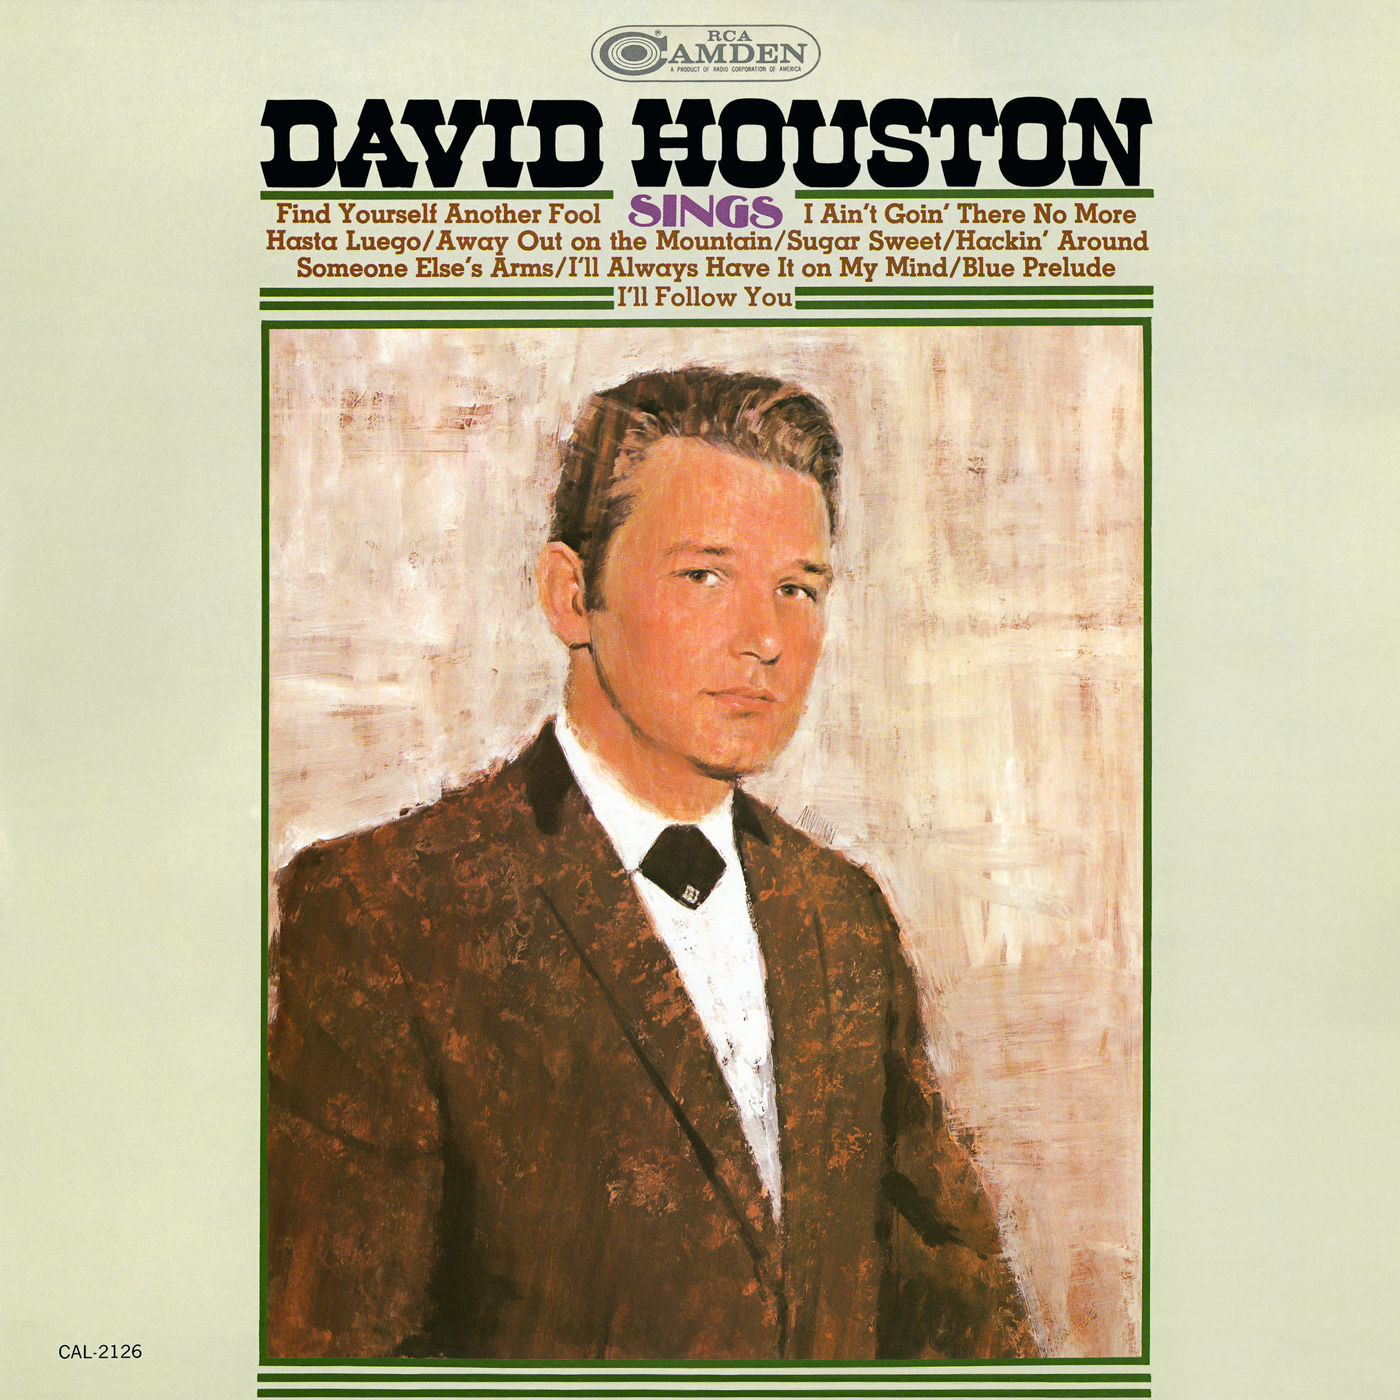 David Houston – Sings